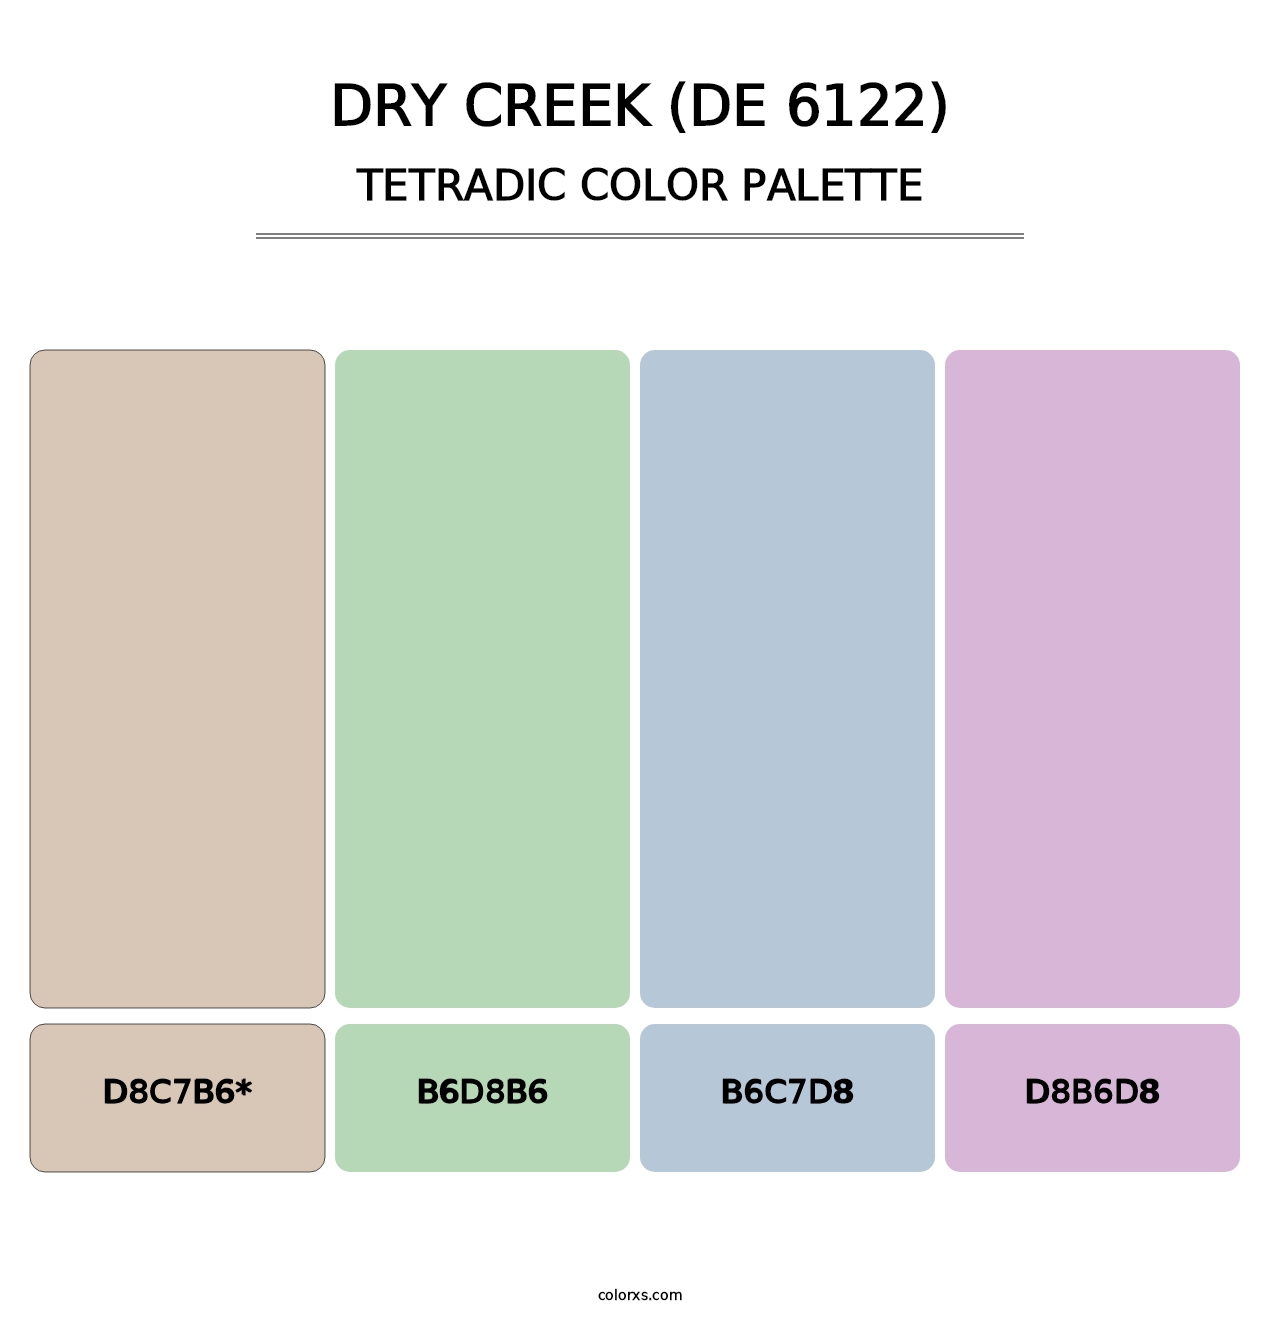 Dry Creek (DE 6122) - Tetradic Color Palette